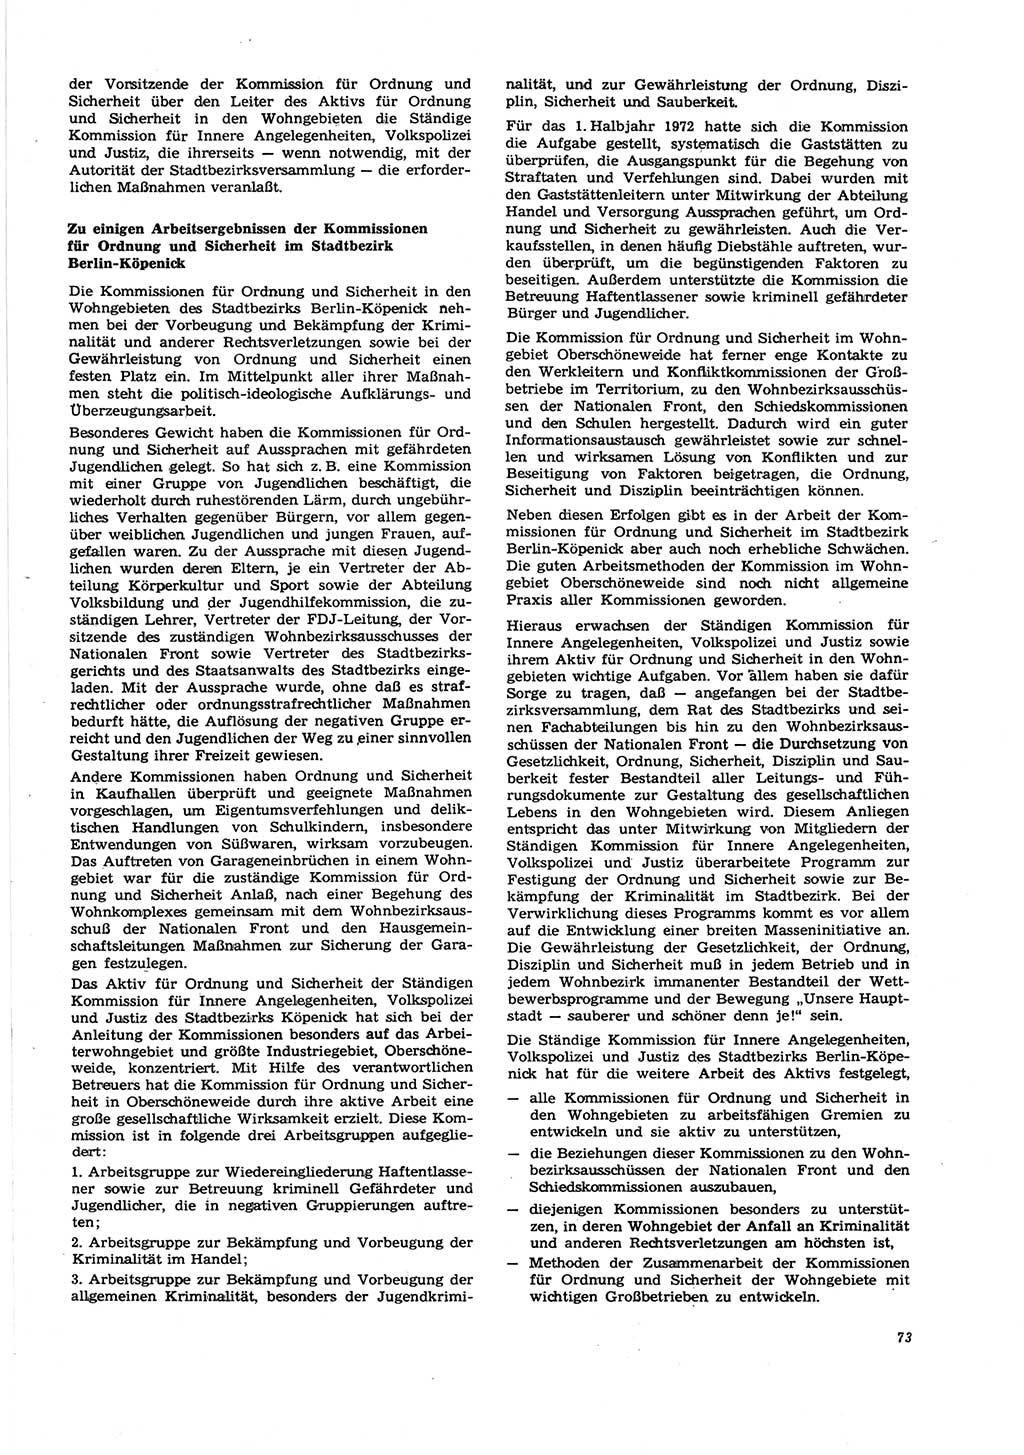 Neue Justiz (NJ), Zeitschrift für Recht und Rechtswissenschaft [Deutsche Demokratische Republik (DDR)], 27. Jahrgang 1973, Seite 73 (NJ DDR 1973, S. 73)